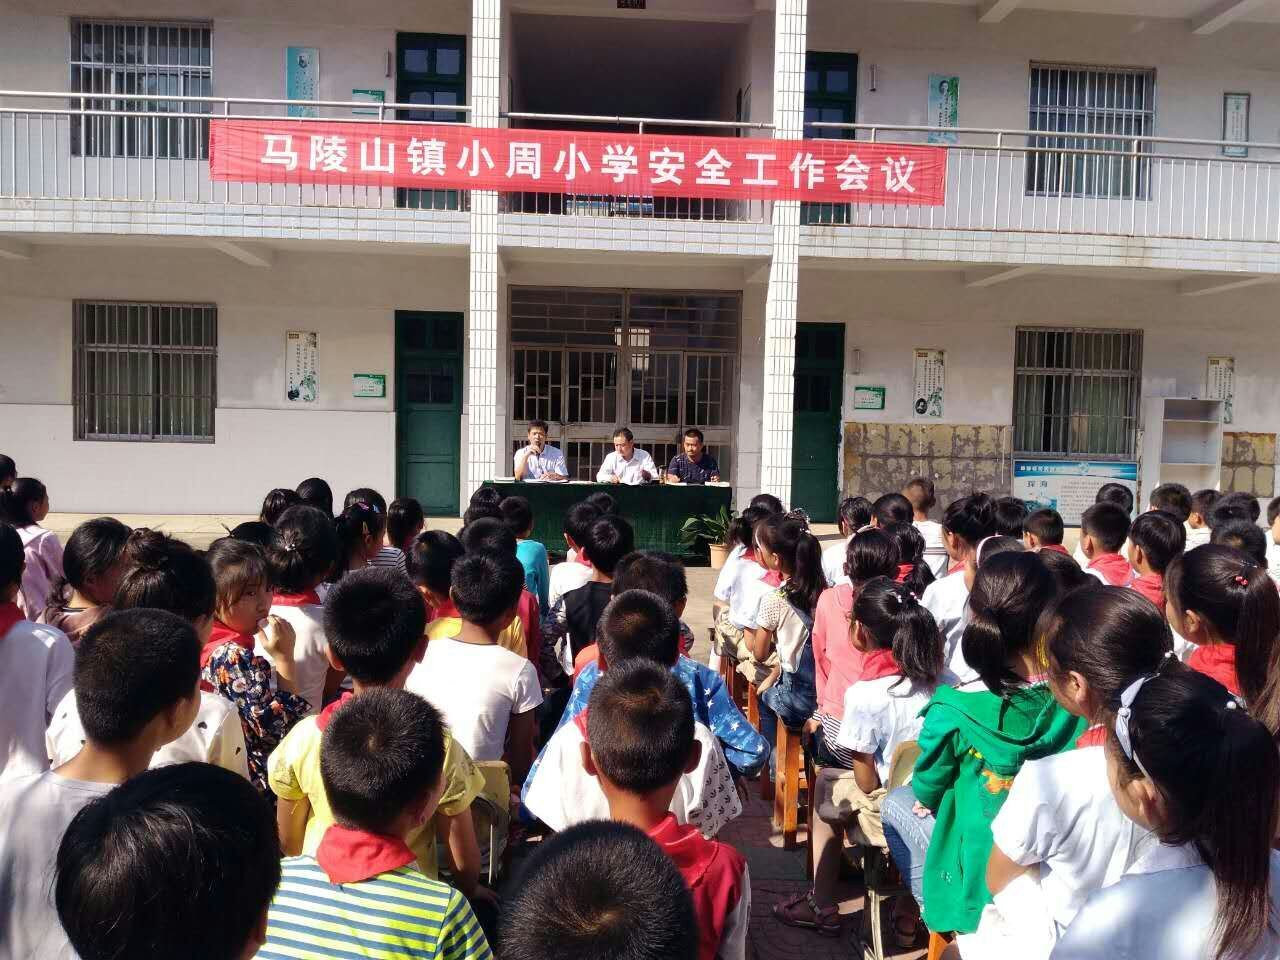 安全责任重于泰山 ----马陵山镇小周小学召开安全专题会议